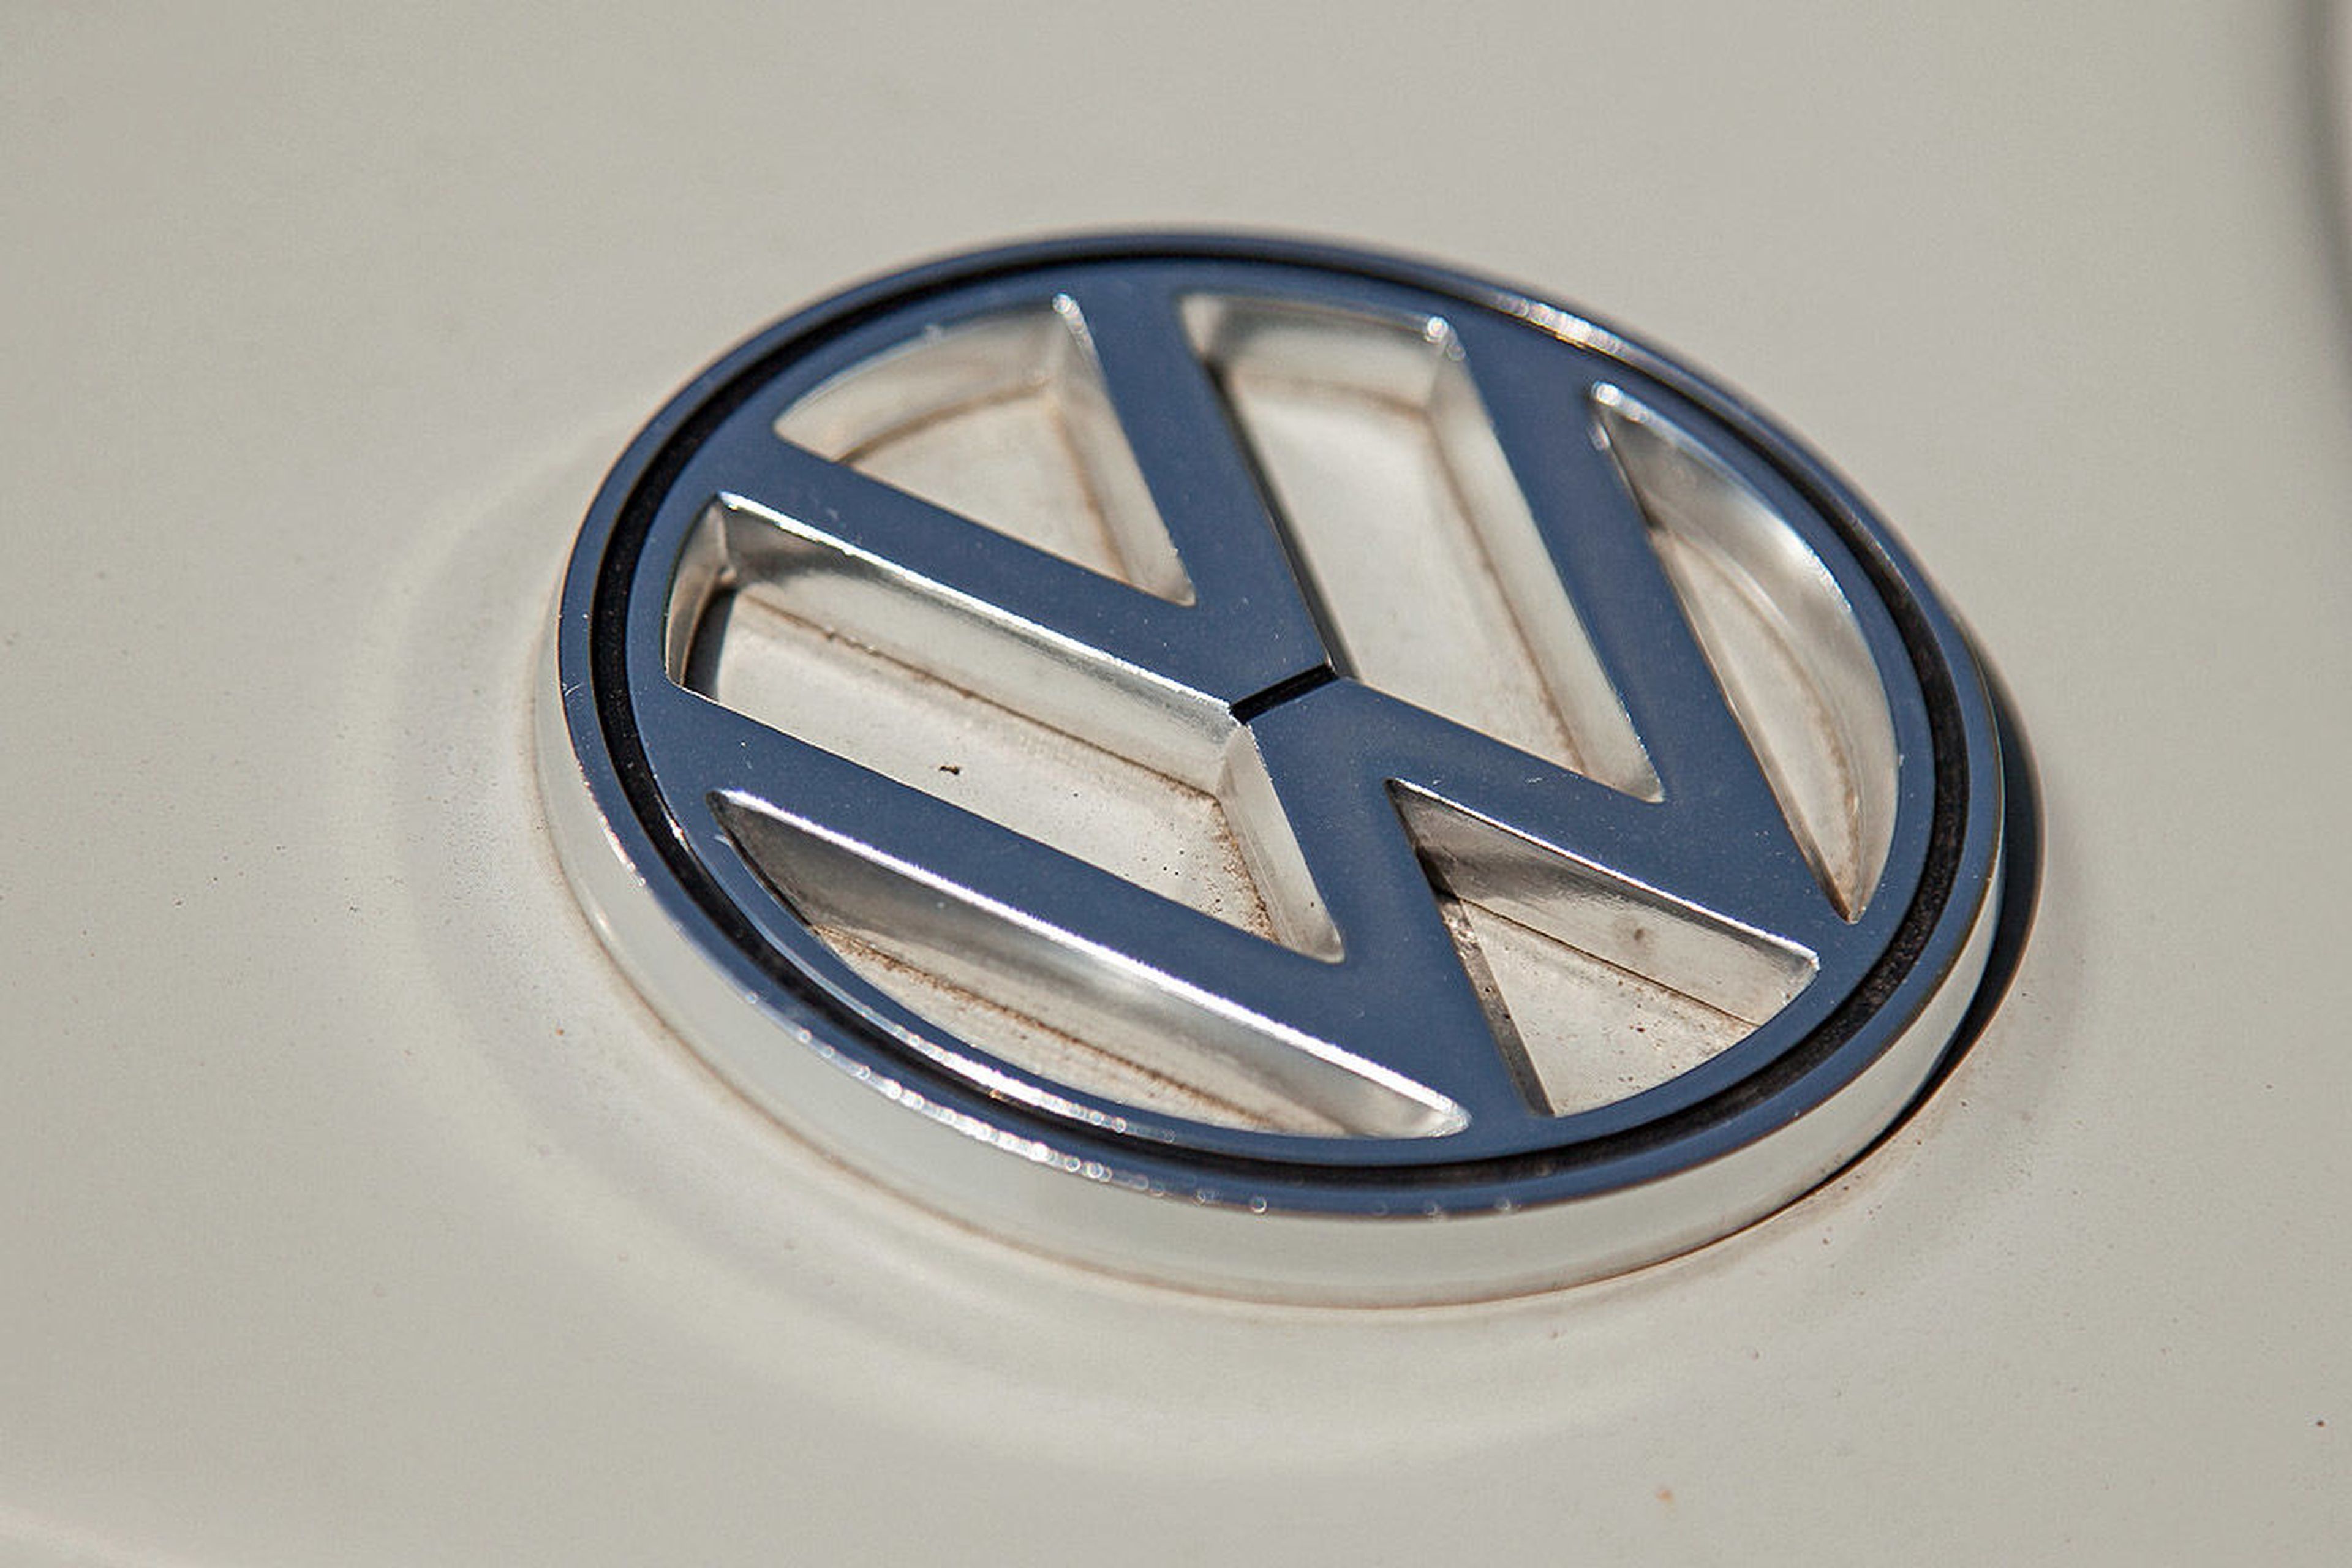 Repasamos la historia de Volkswagen, a través de sus logos